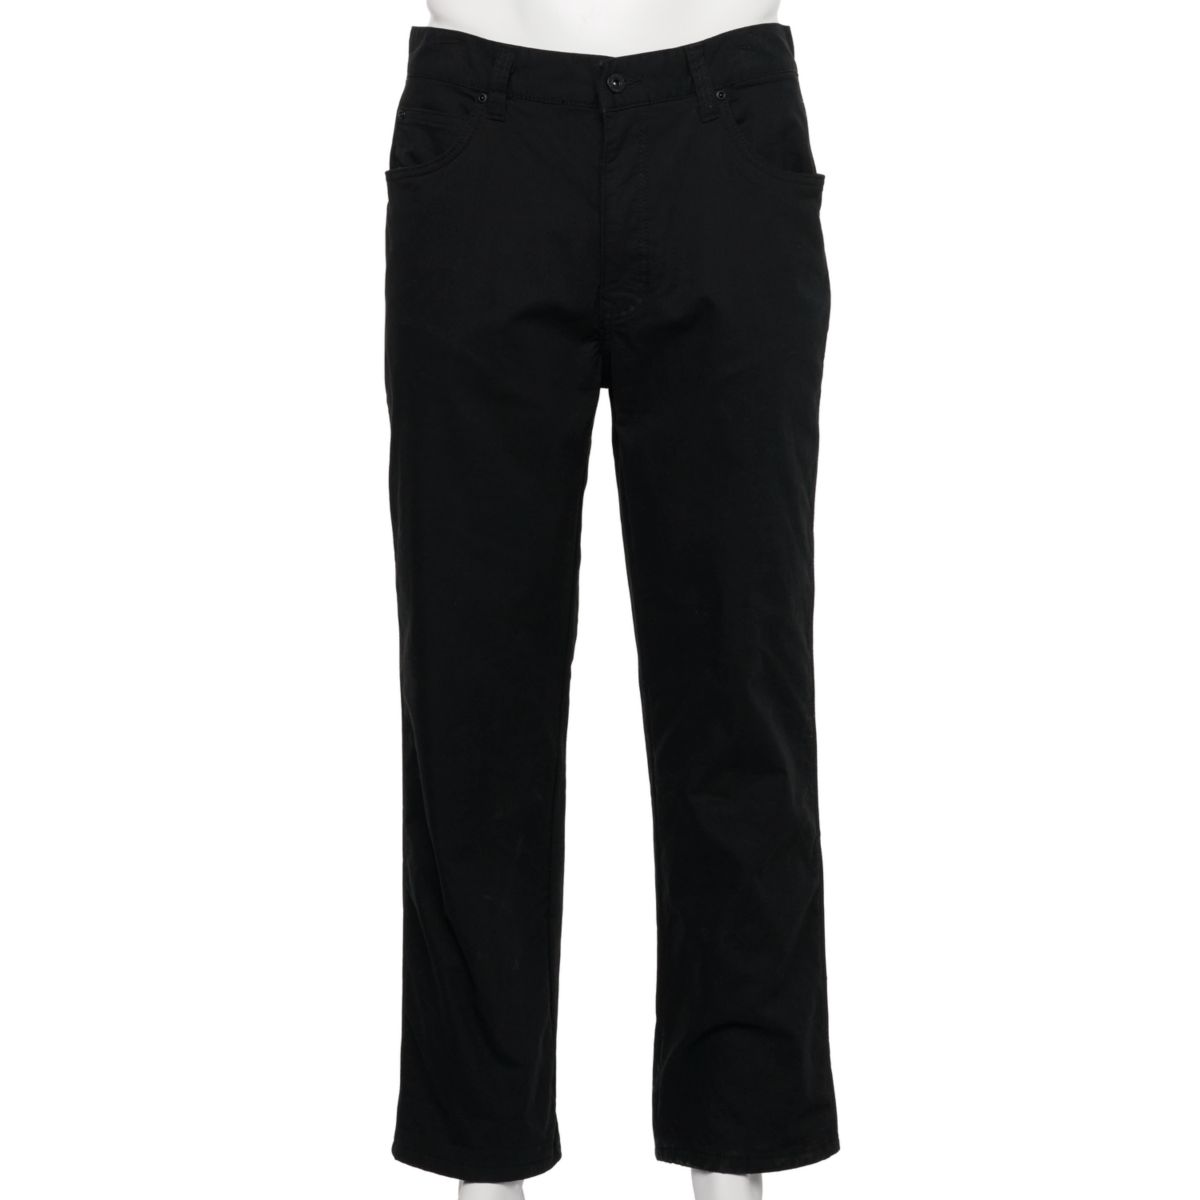 Мужские брюки Smith's Workwear из плотной ткани с 5 карманами на эластичной флисовой подкладке Smith's Workwear